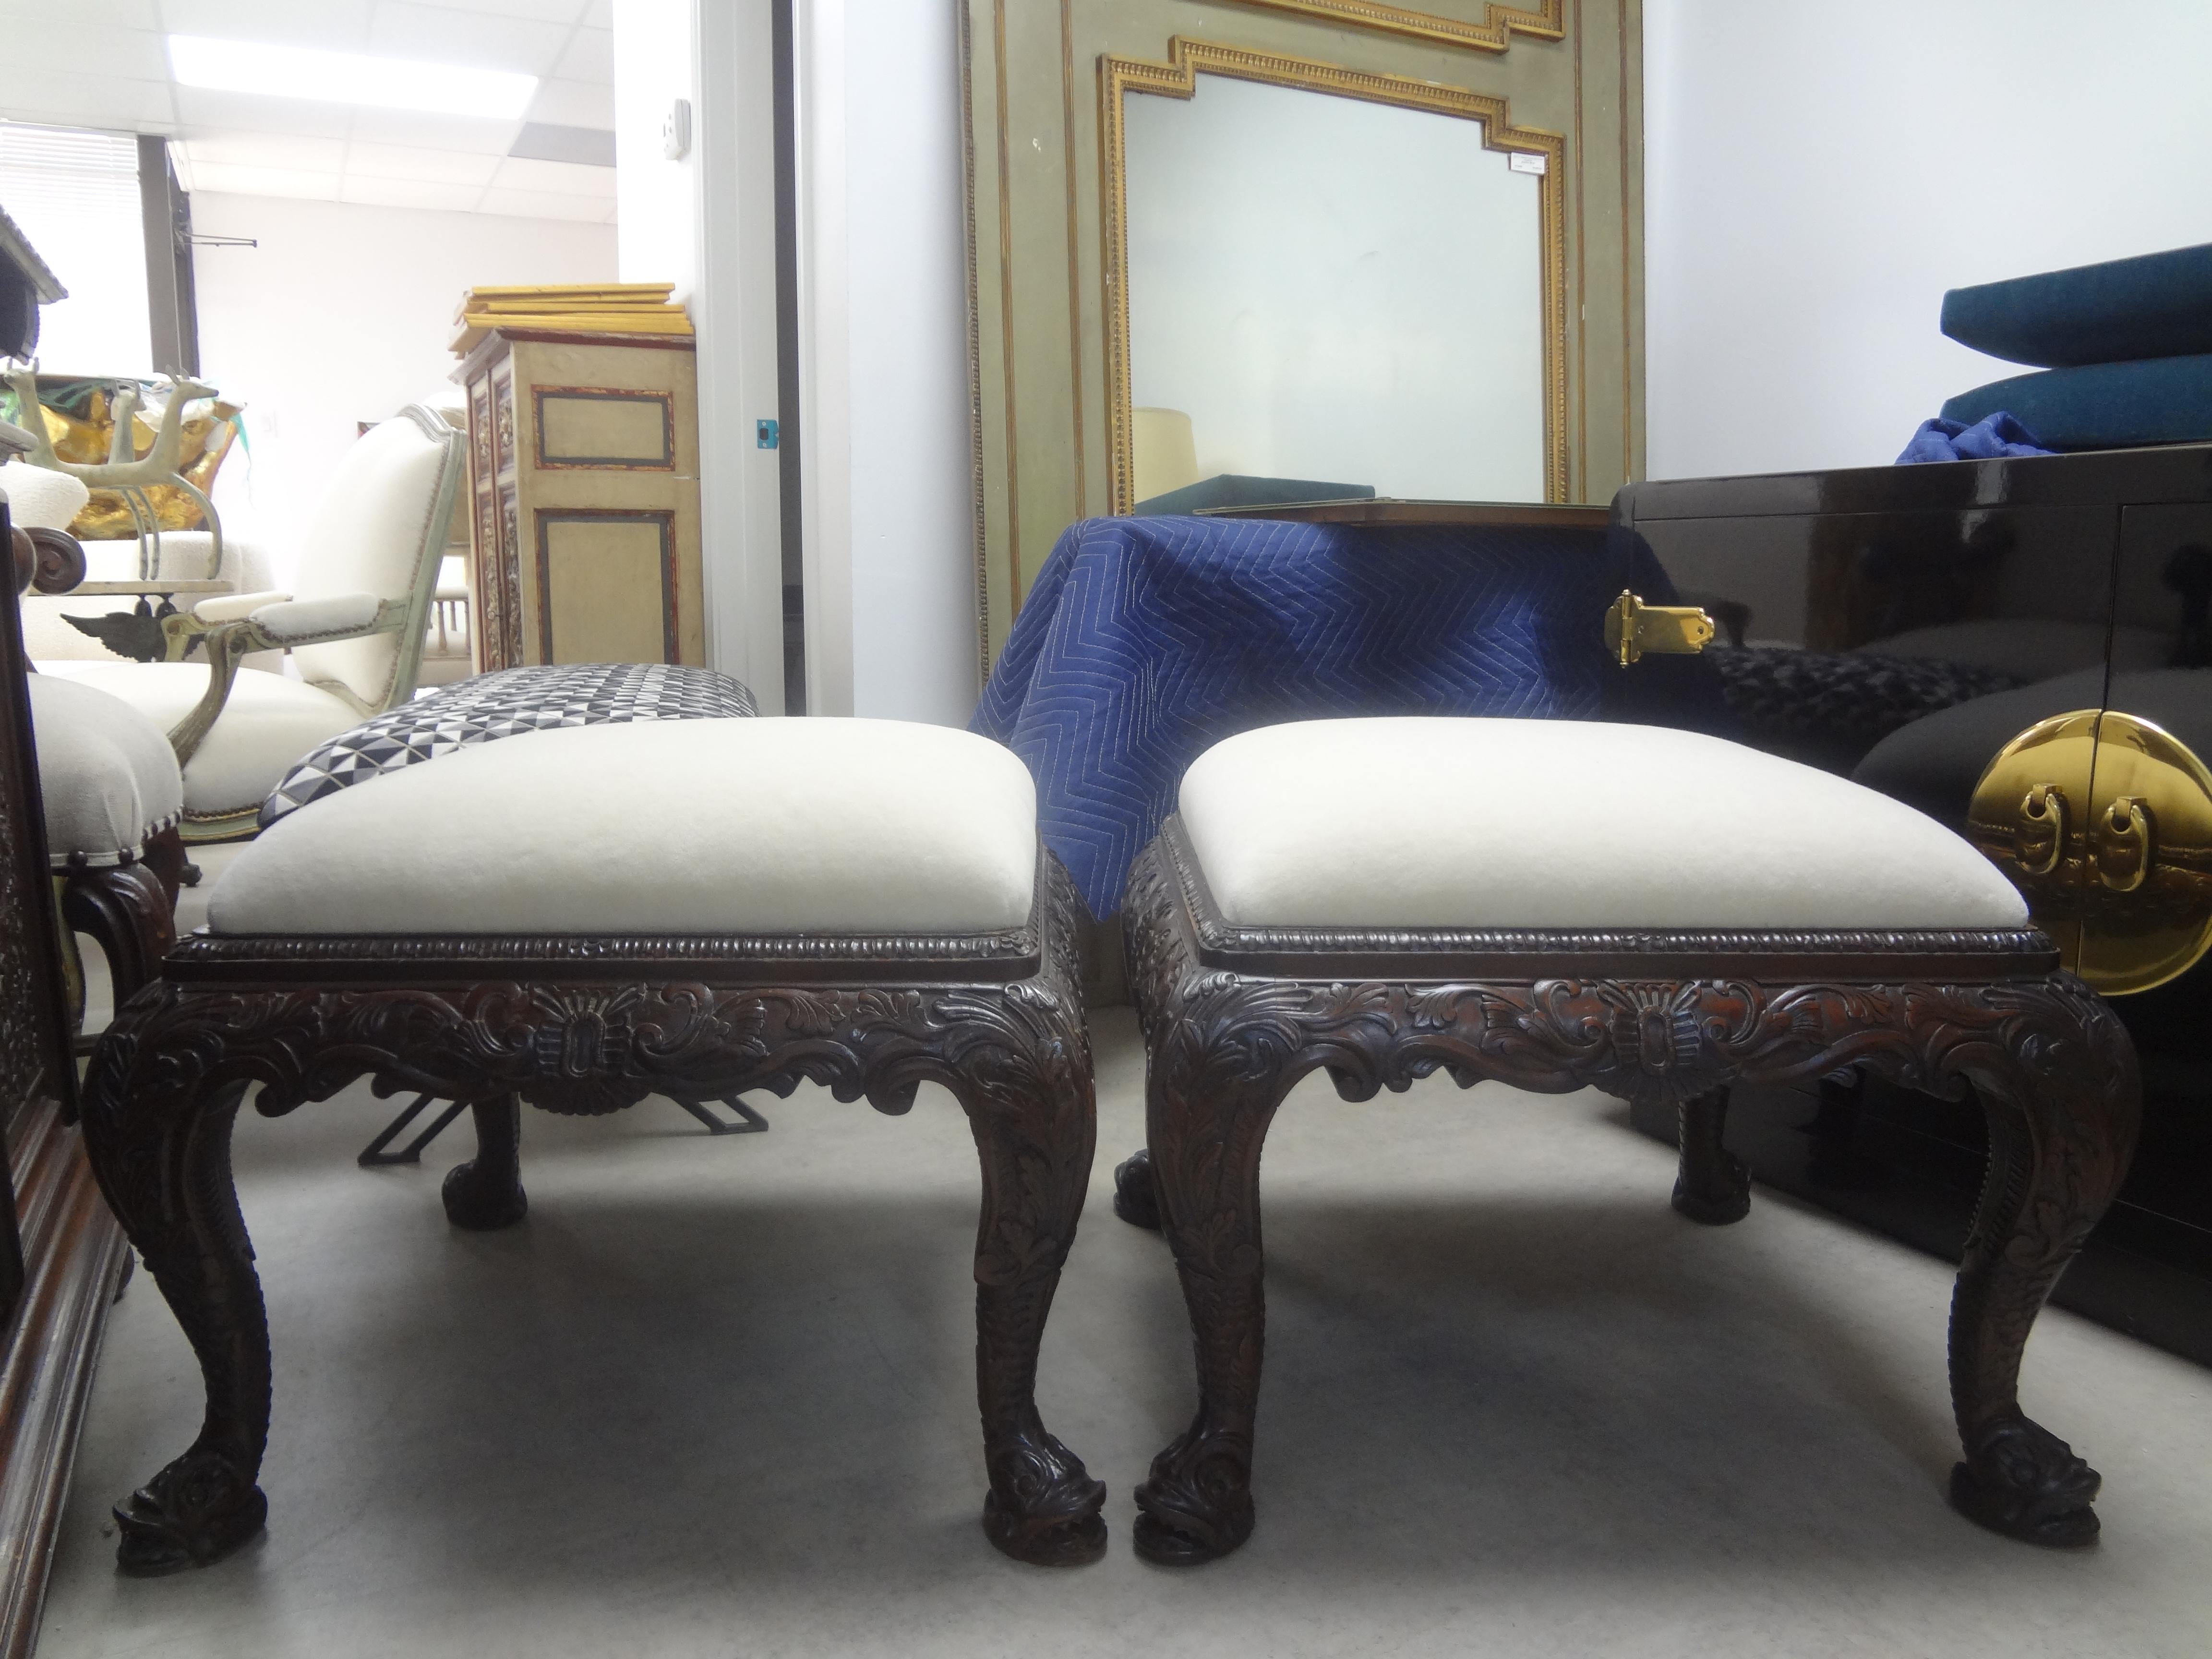 Paire de grands ottomans anciens de style Régence anglaise à grande échelle avec pieds en forme de dauphin. Ces grands bancs ou poufs de style Régence étonnants sont magnifiquement sculptés sur tous les côtés et sont suffisamment grands pour